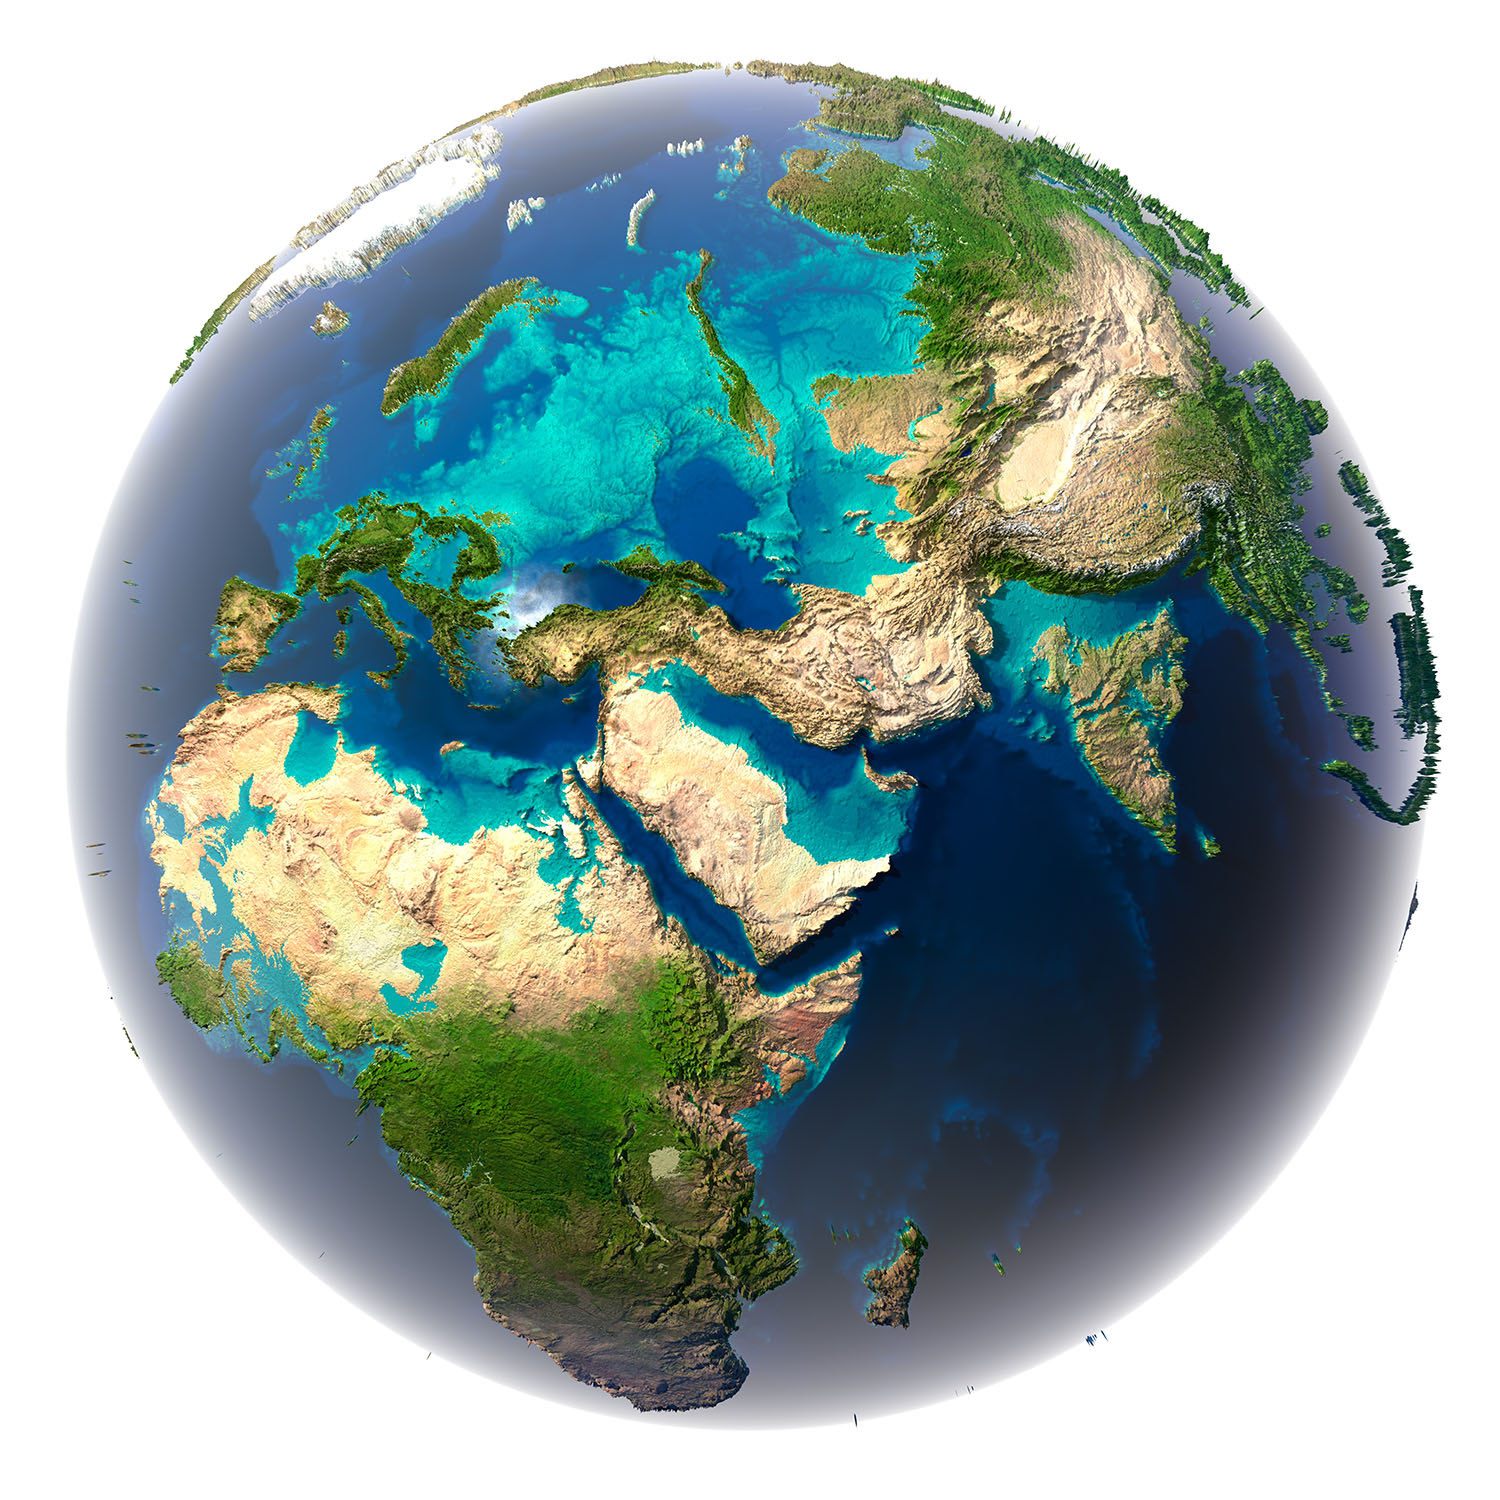 Художественное изображение Земли, где 80% площади занимают океаны